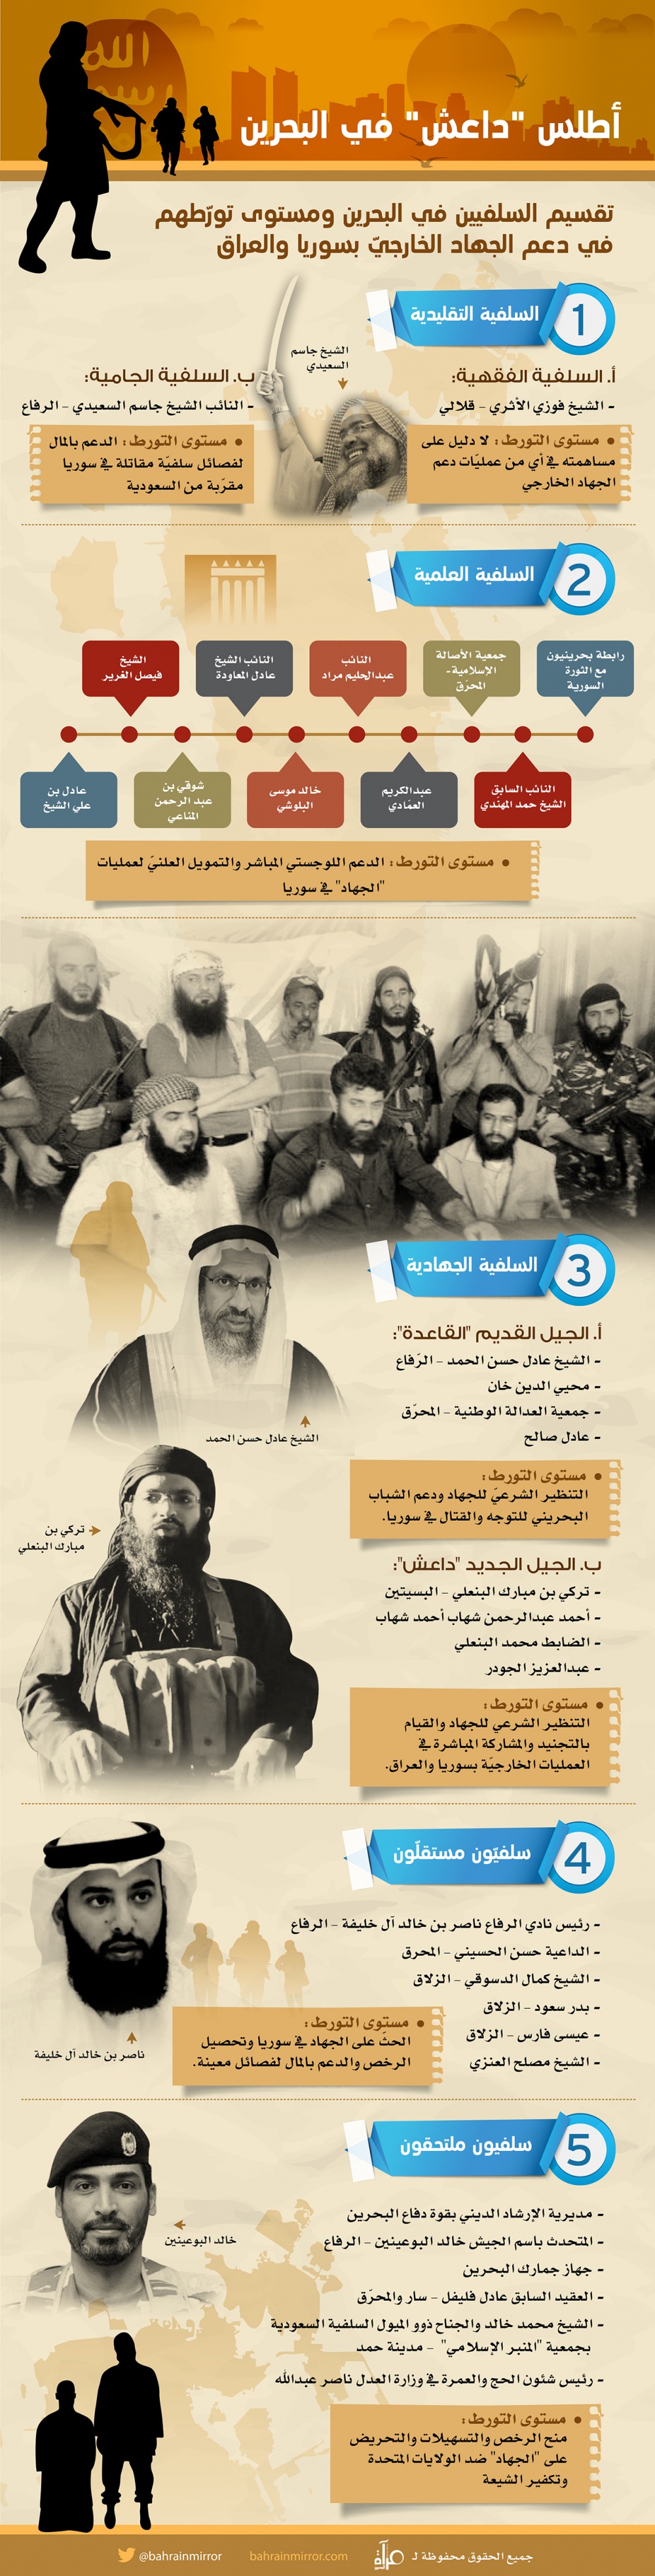 أطلس داعش في البحرين: تقسيم الجماعات السلفية